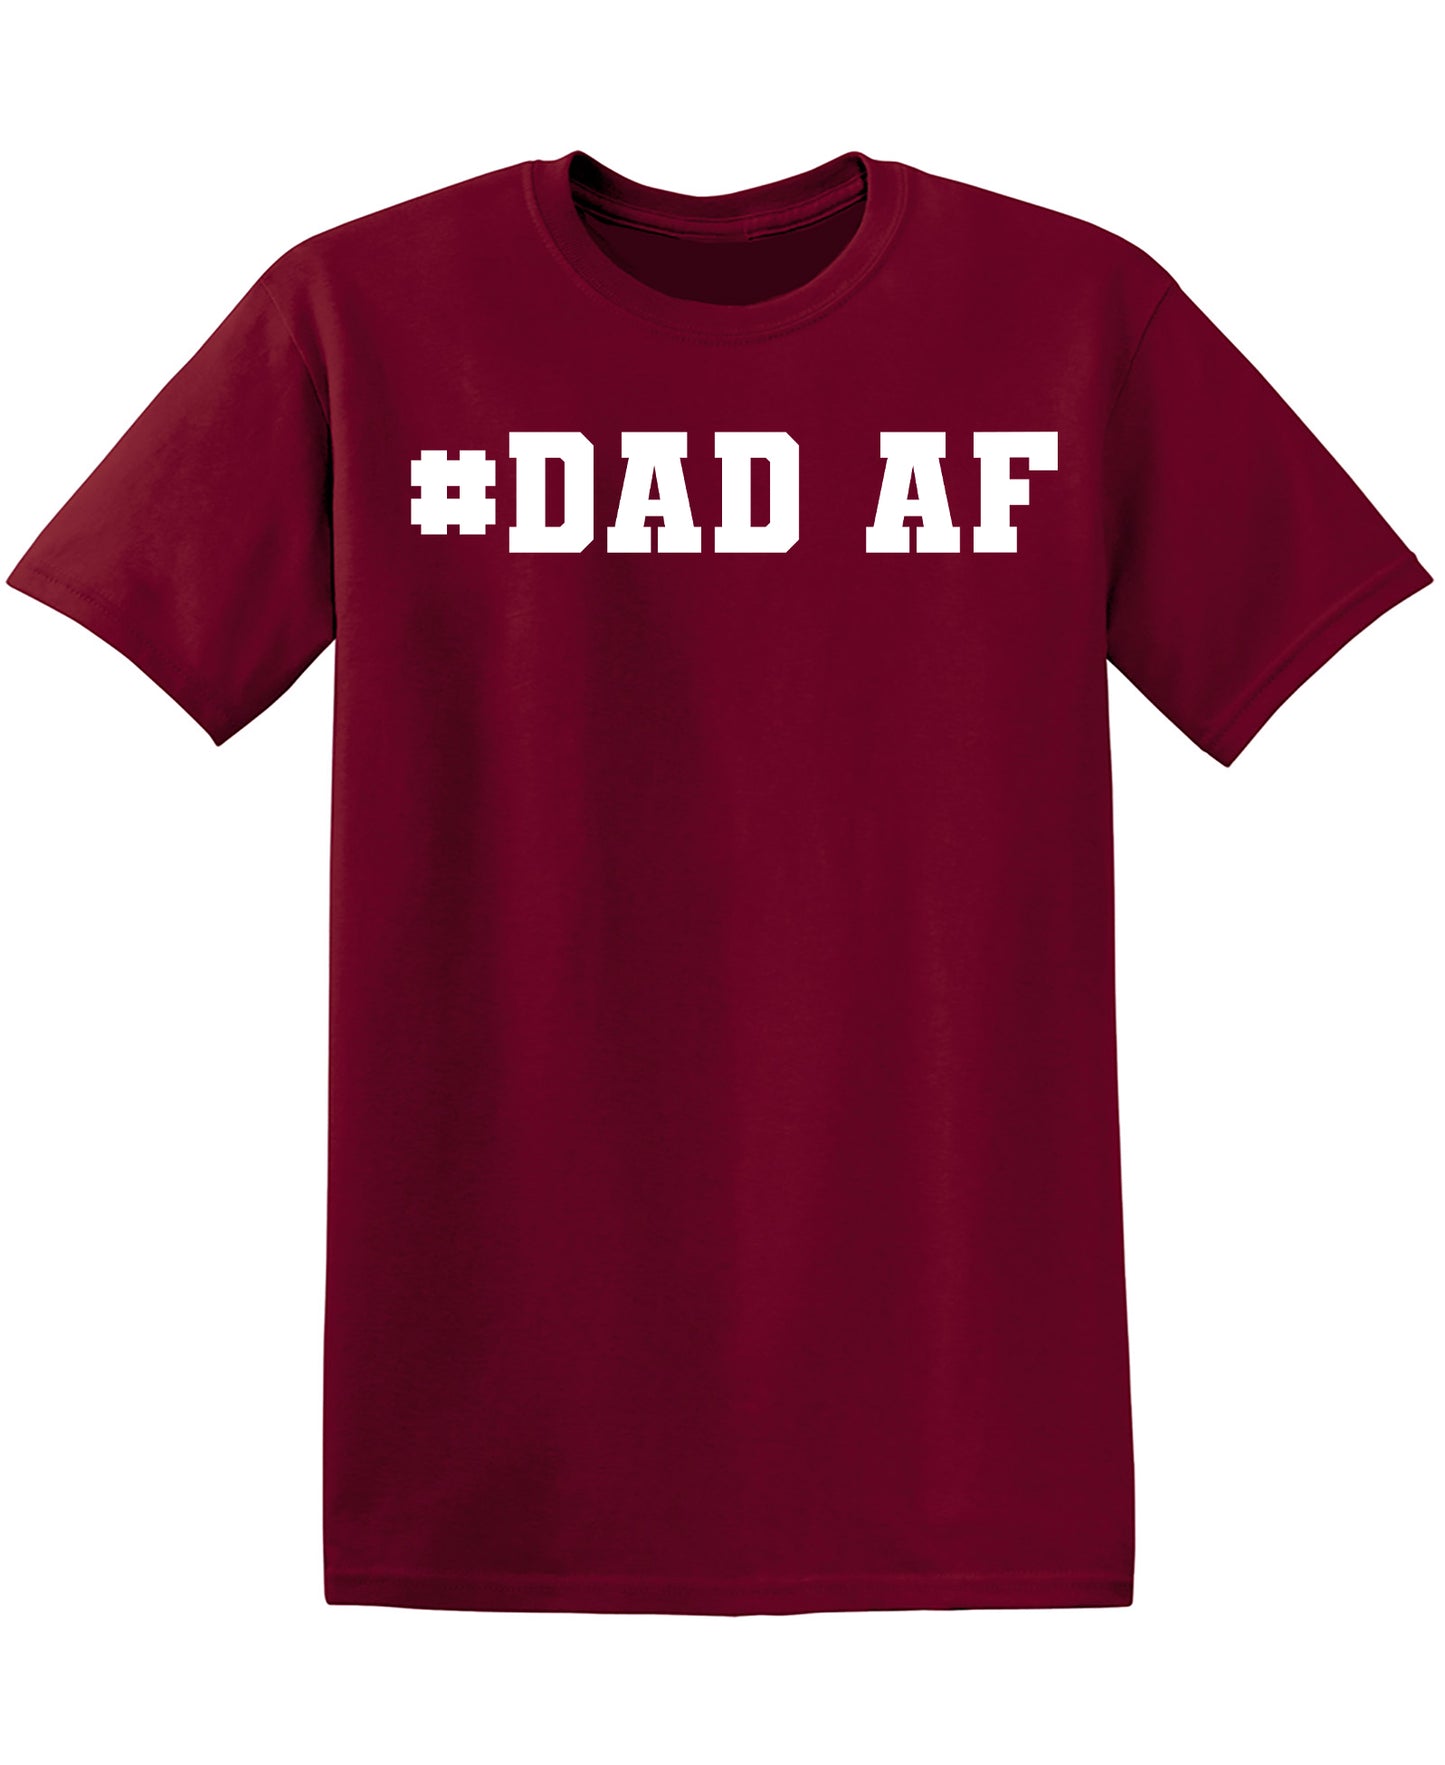 Dad AF Shirt